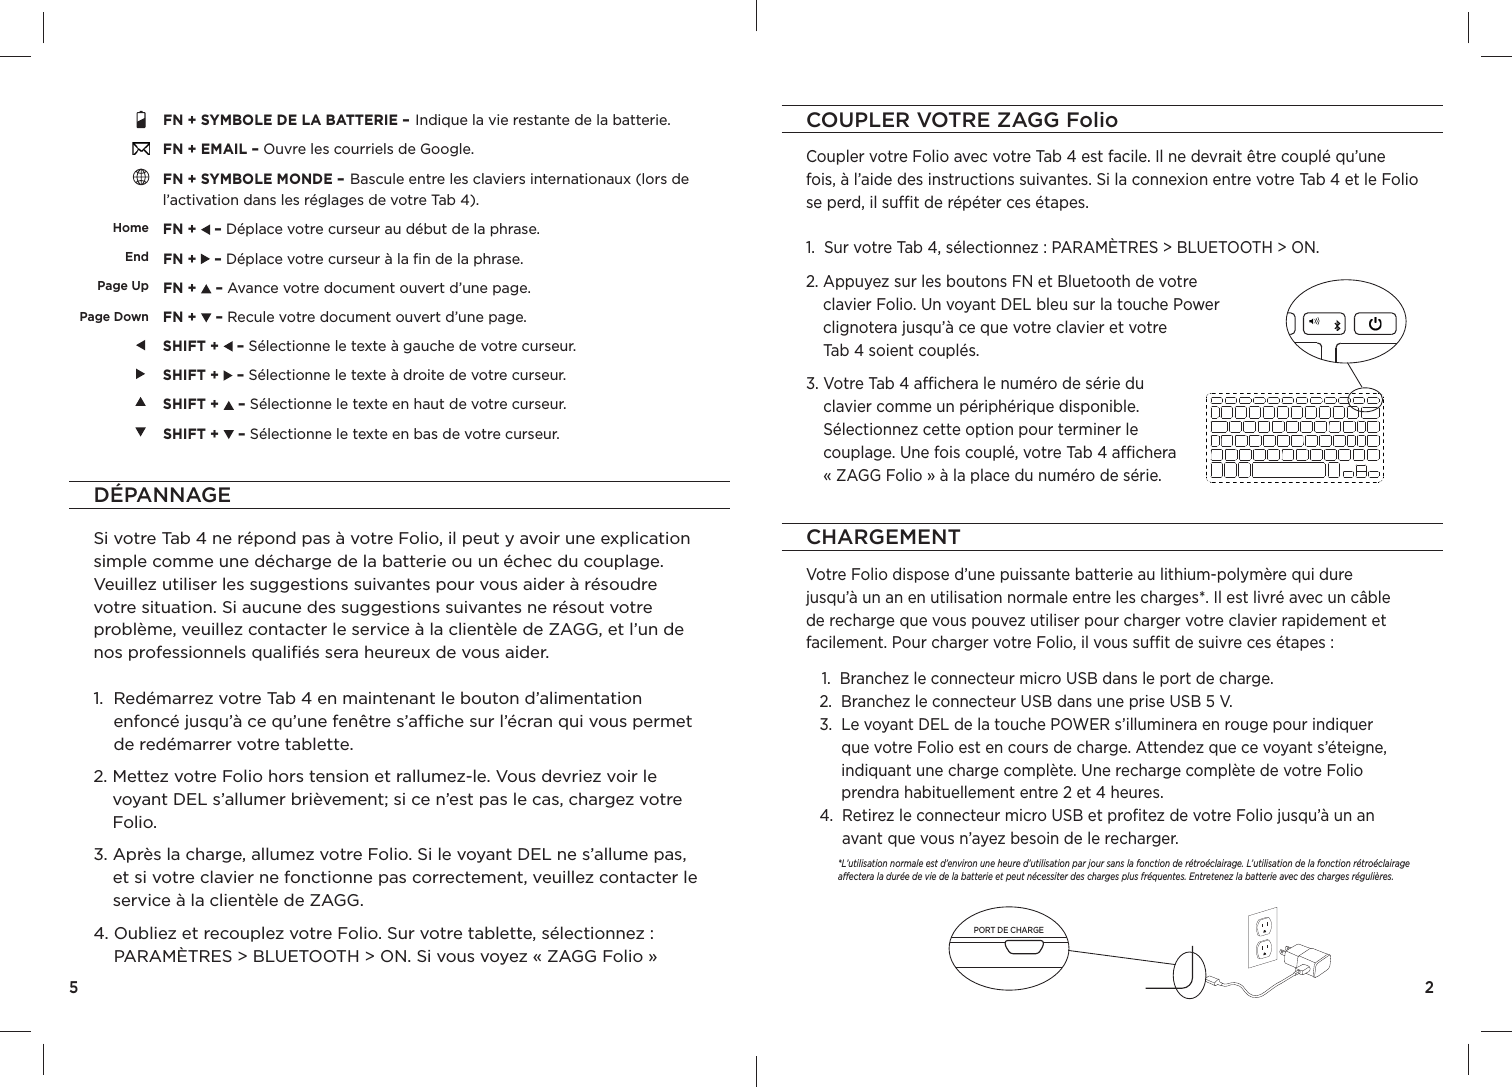 samsung tab 4 8.0 manual pdf